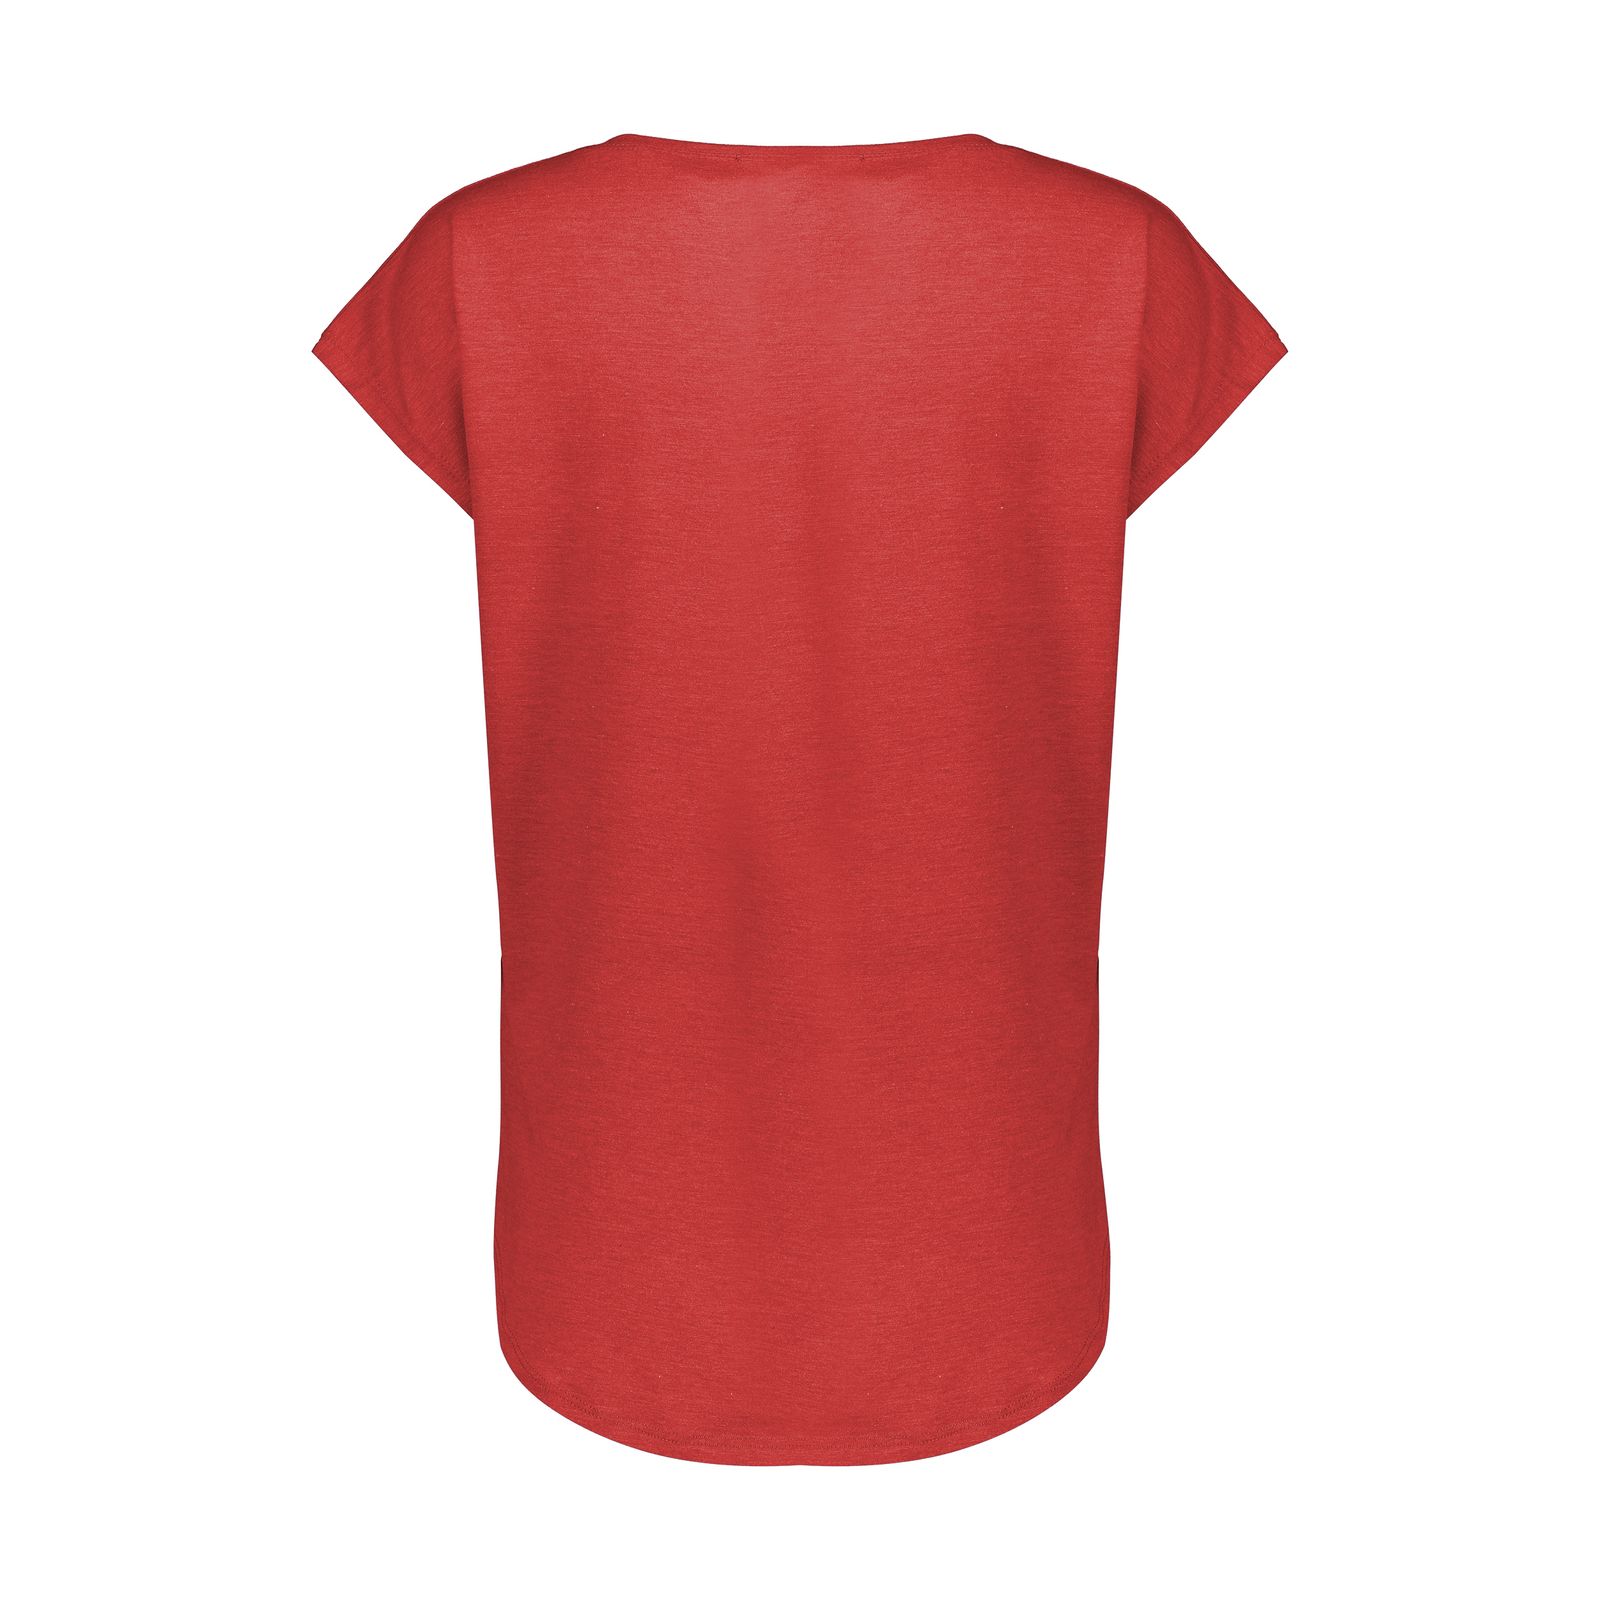 تی شرت آستین کوتاه زنانه افراتین کد 2551 رنگ قرمز -  - 4